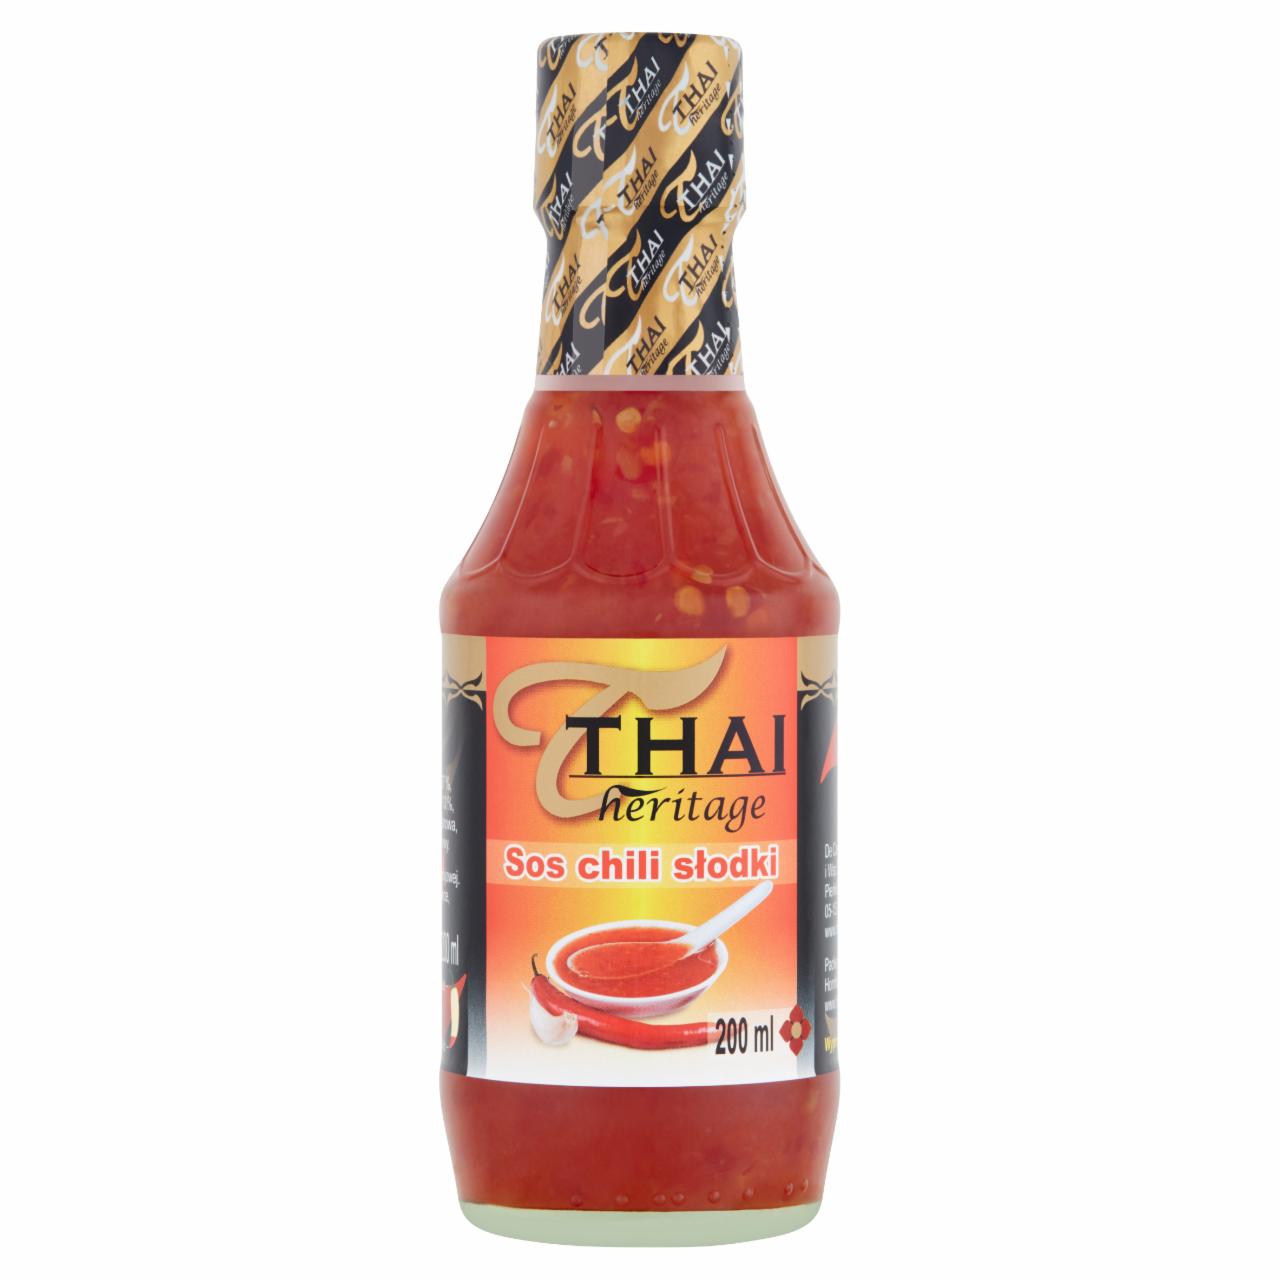 Zdjęcia - Thai Heritage Sos chilli słodki 200 ml